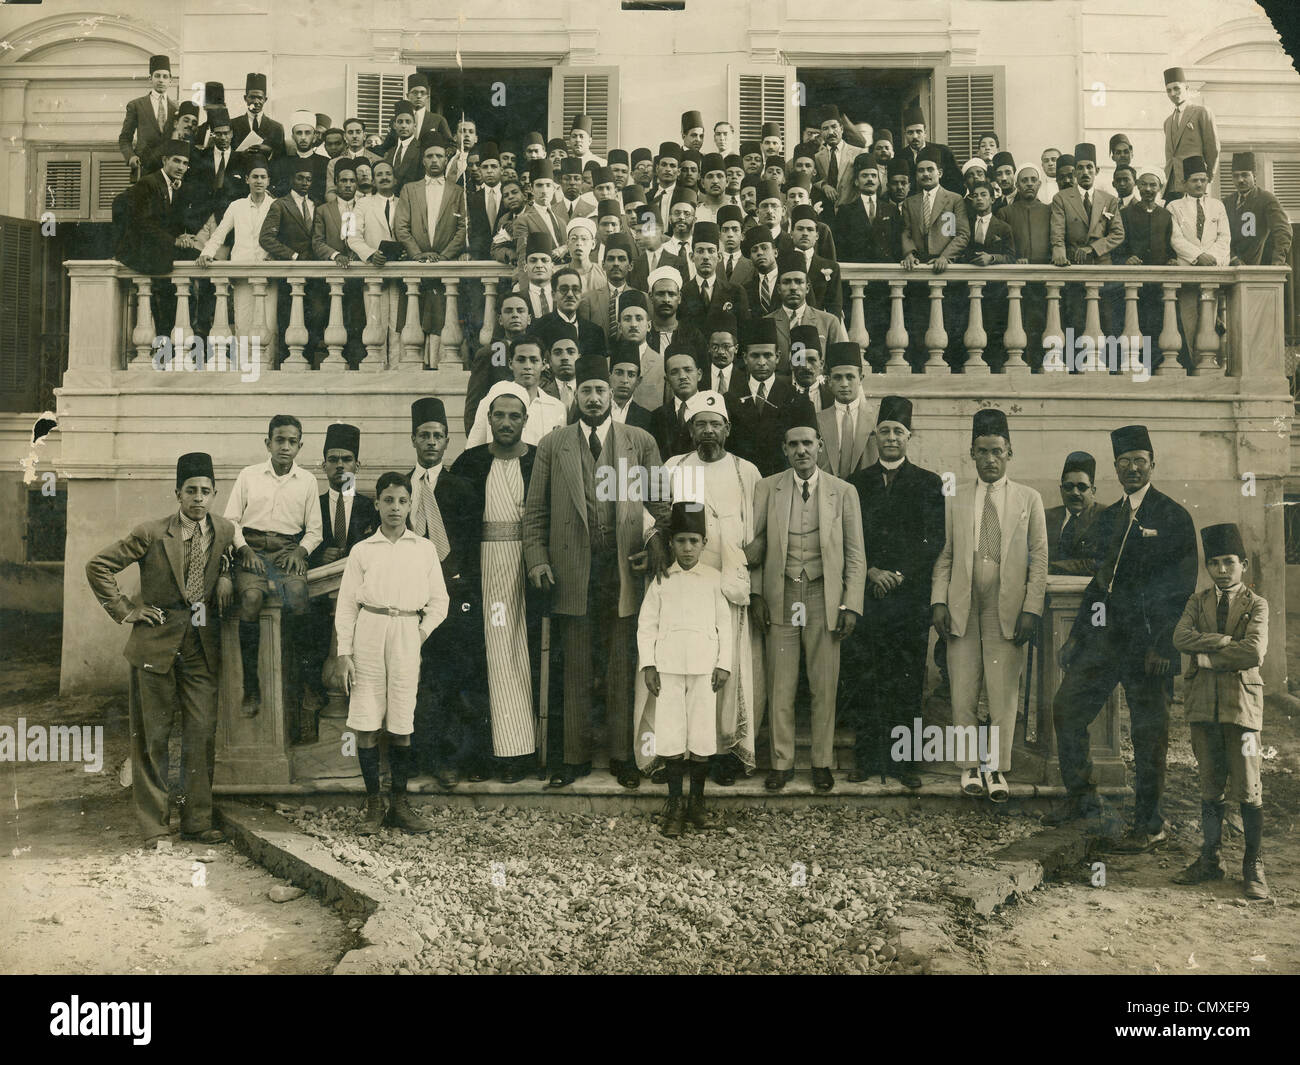 Hassan El Banna, der Gründer der Muslimbruderschaft in Ägypten, mit einer Gruppe von Unterstützern in den 1940er Jahren. Stockfoto